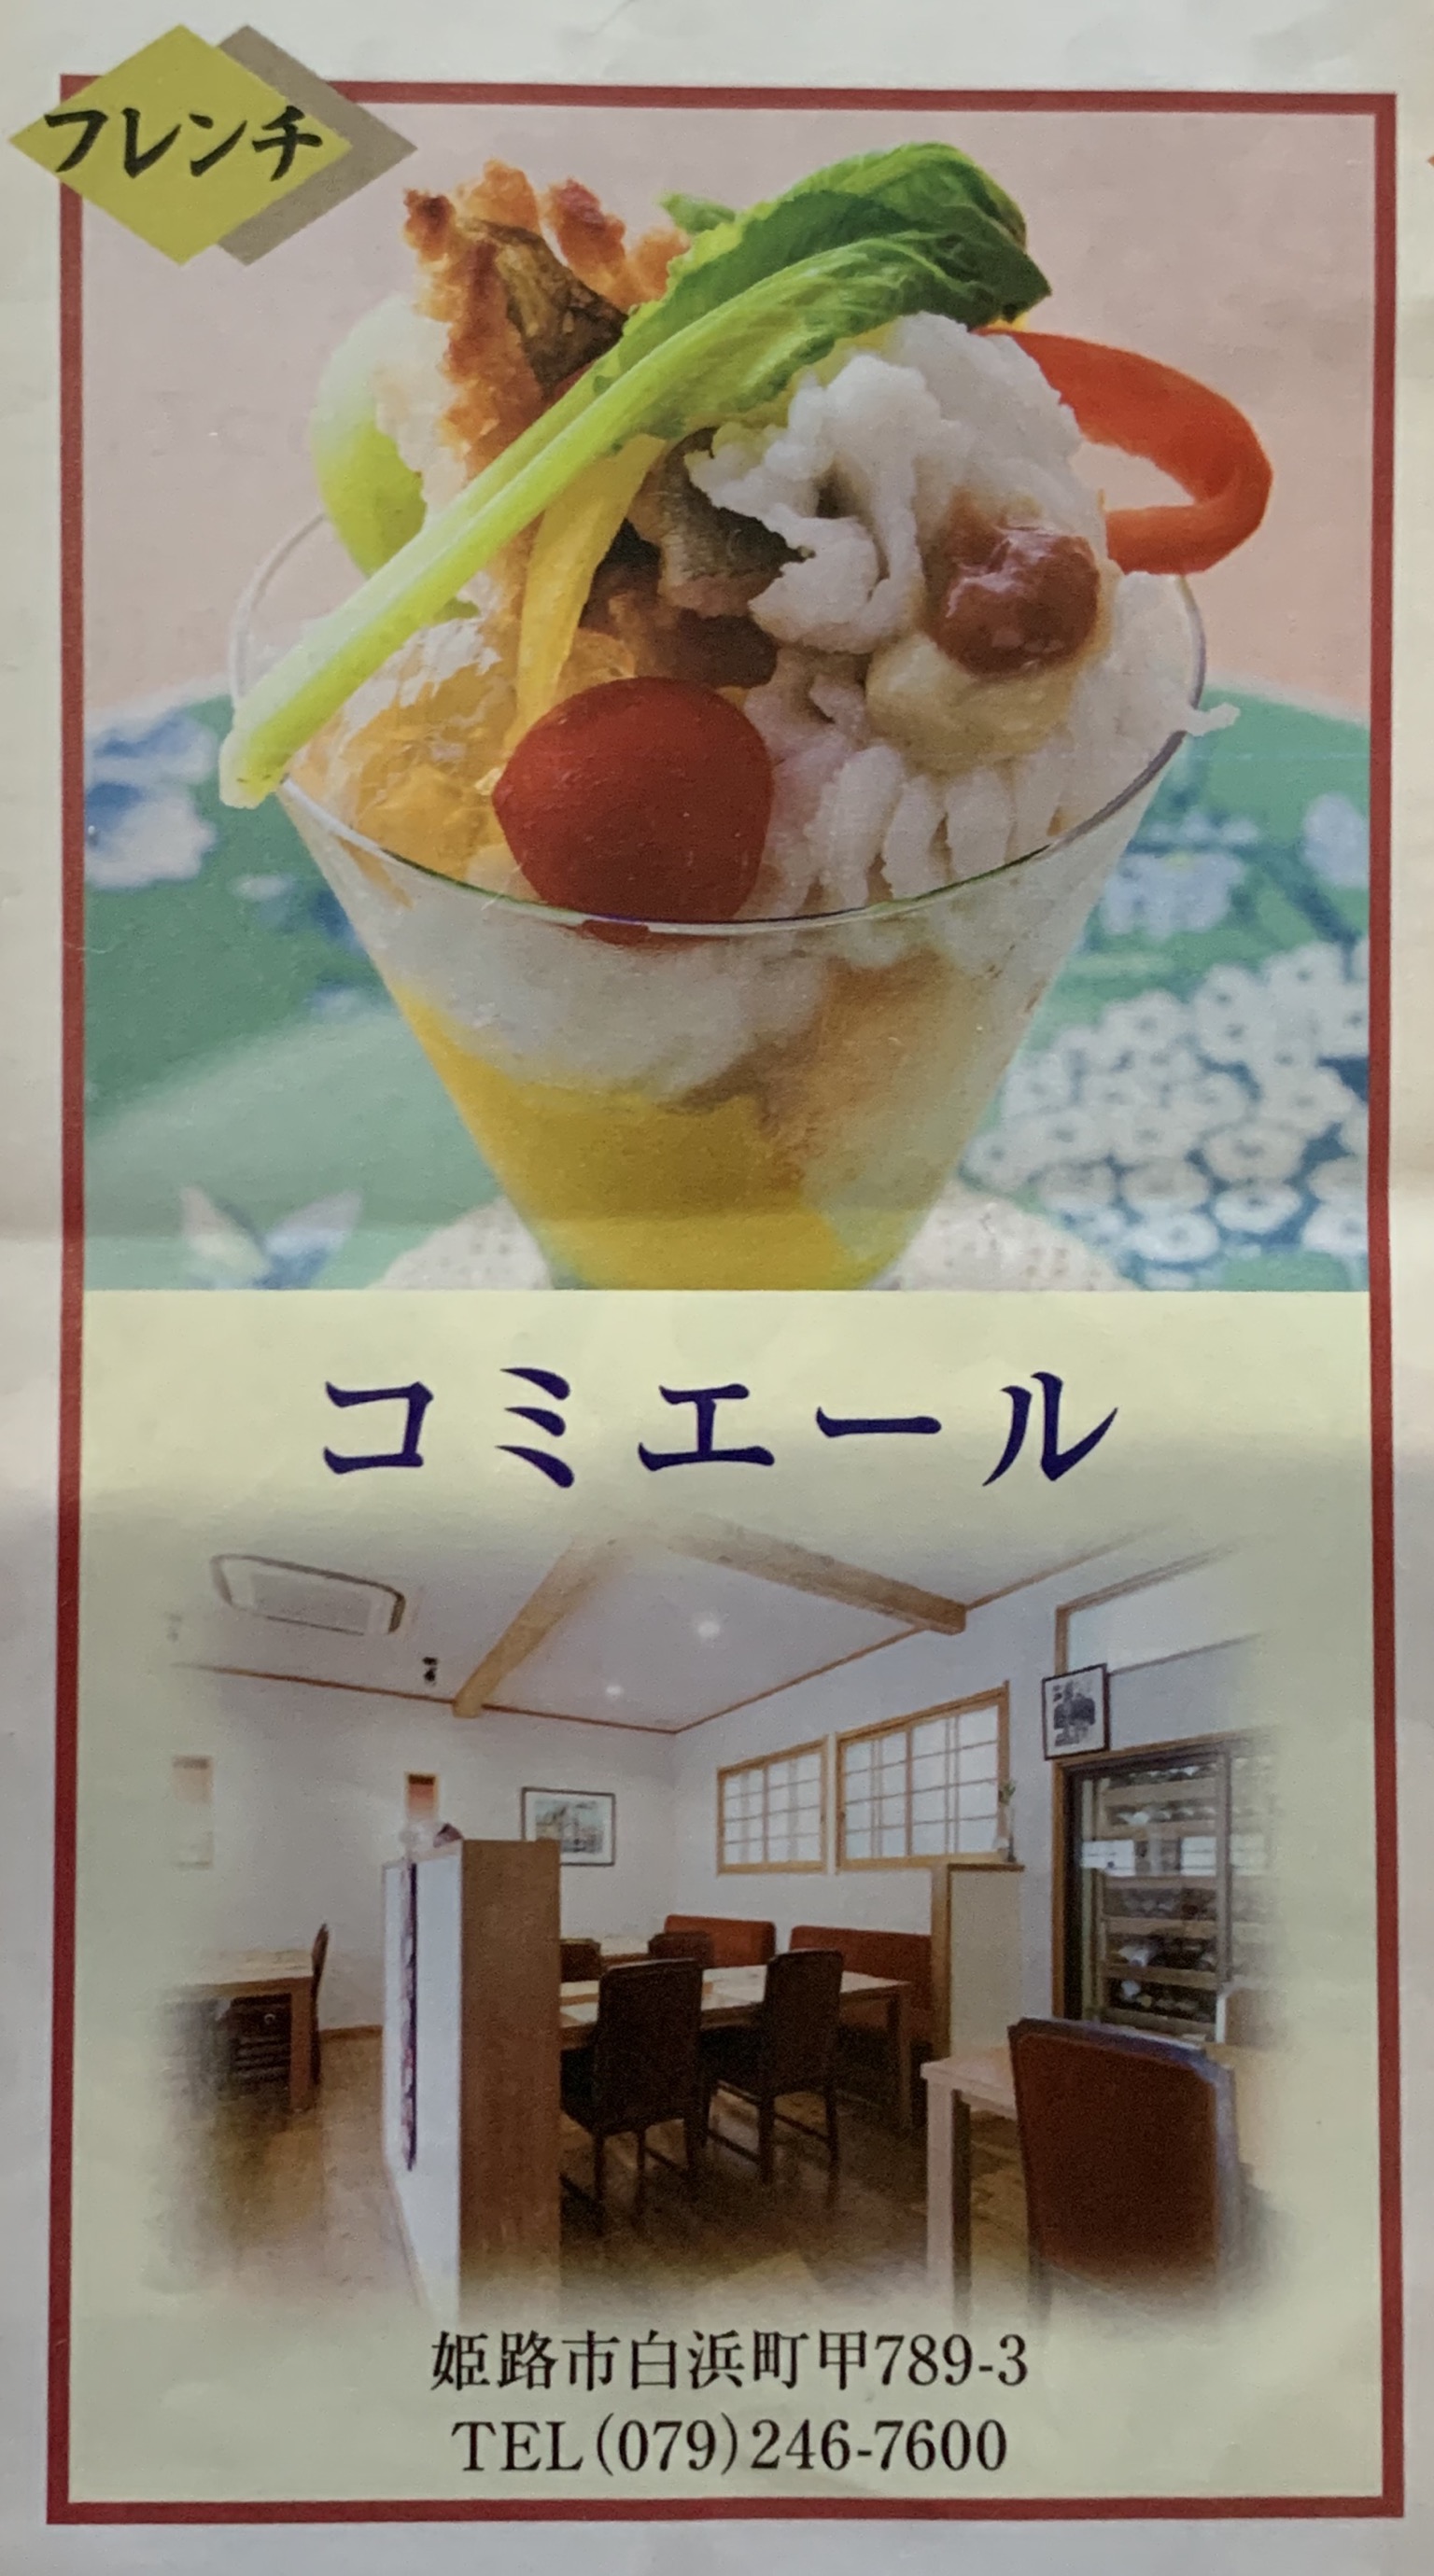 白鷺鱧 姫路市がおすすめするお店として コミエール 兵庫 姫路の地産地消を意識したフランス料理店